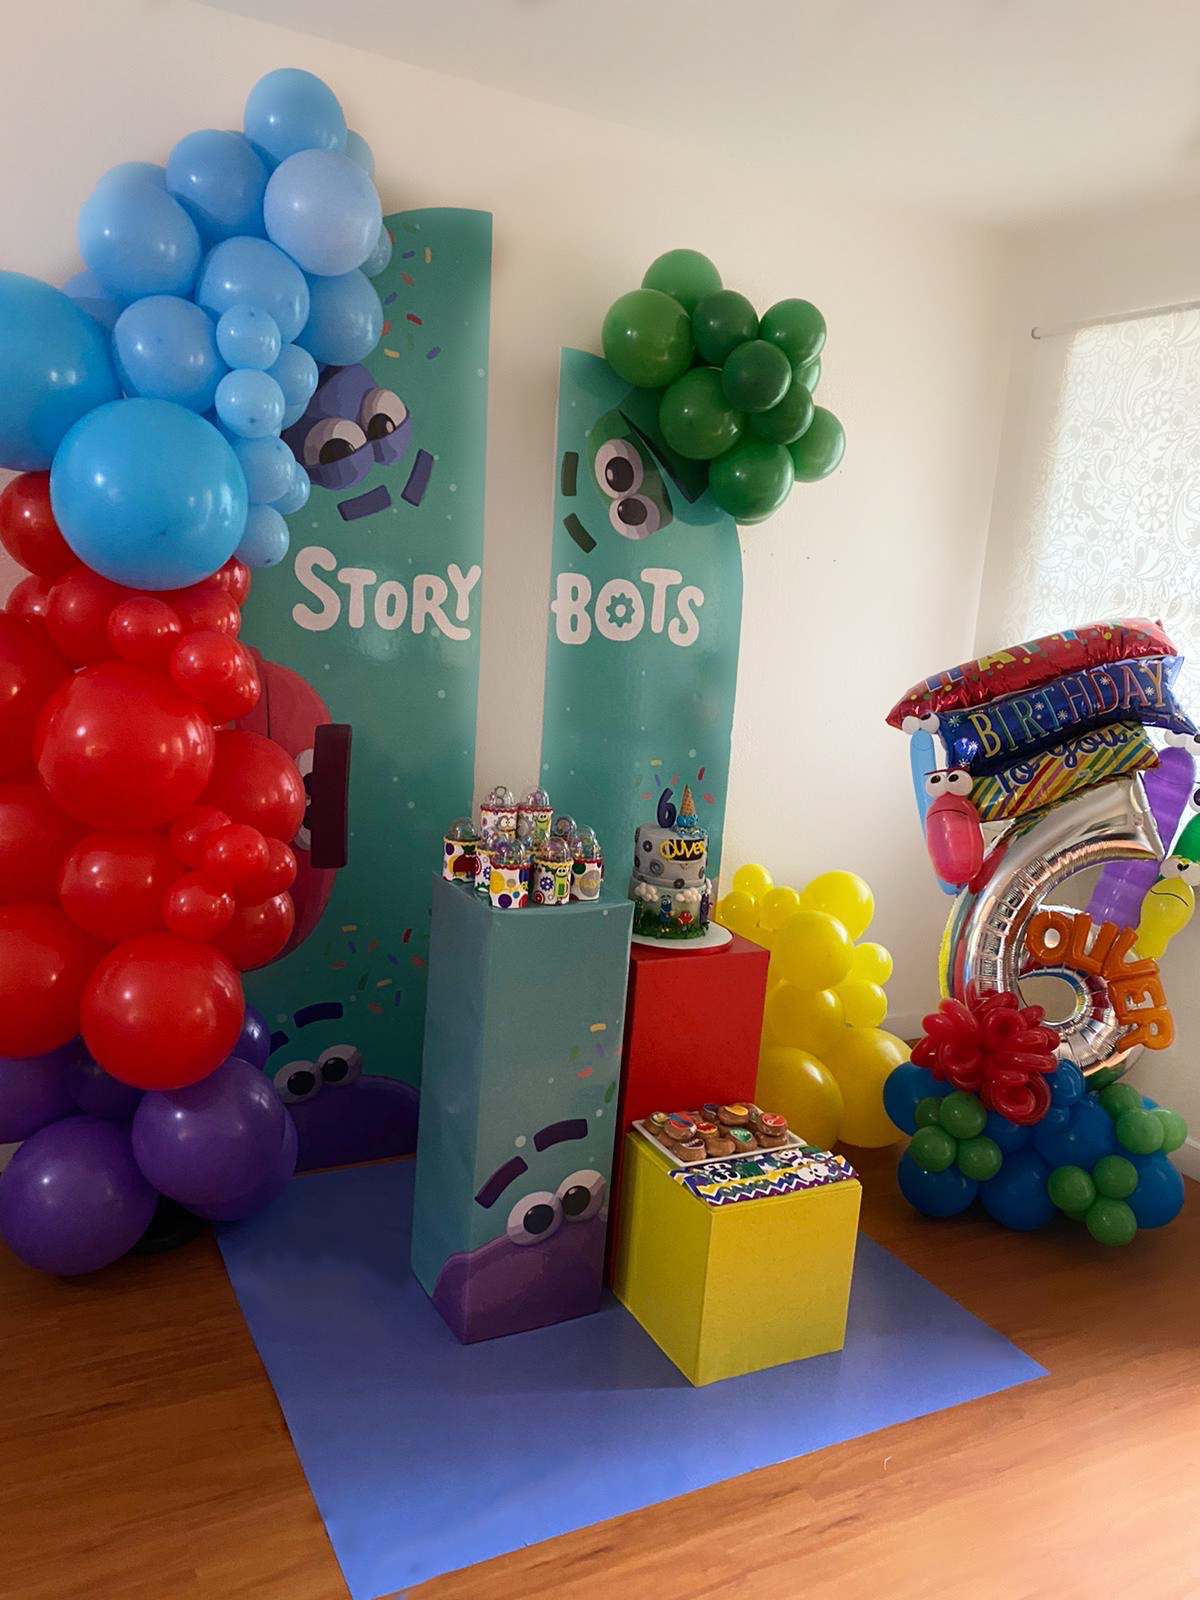 Story Bots Birthday